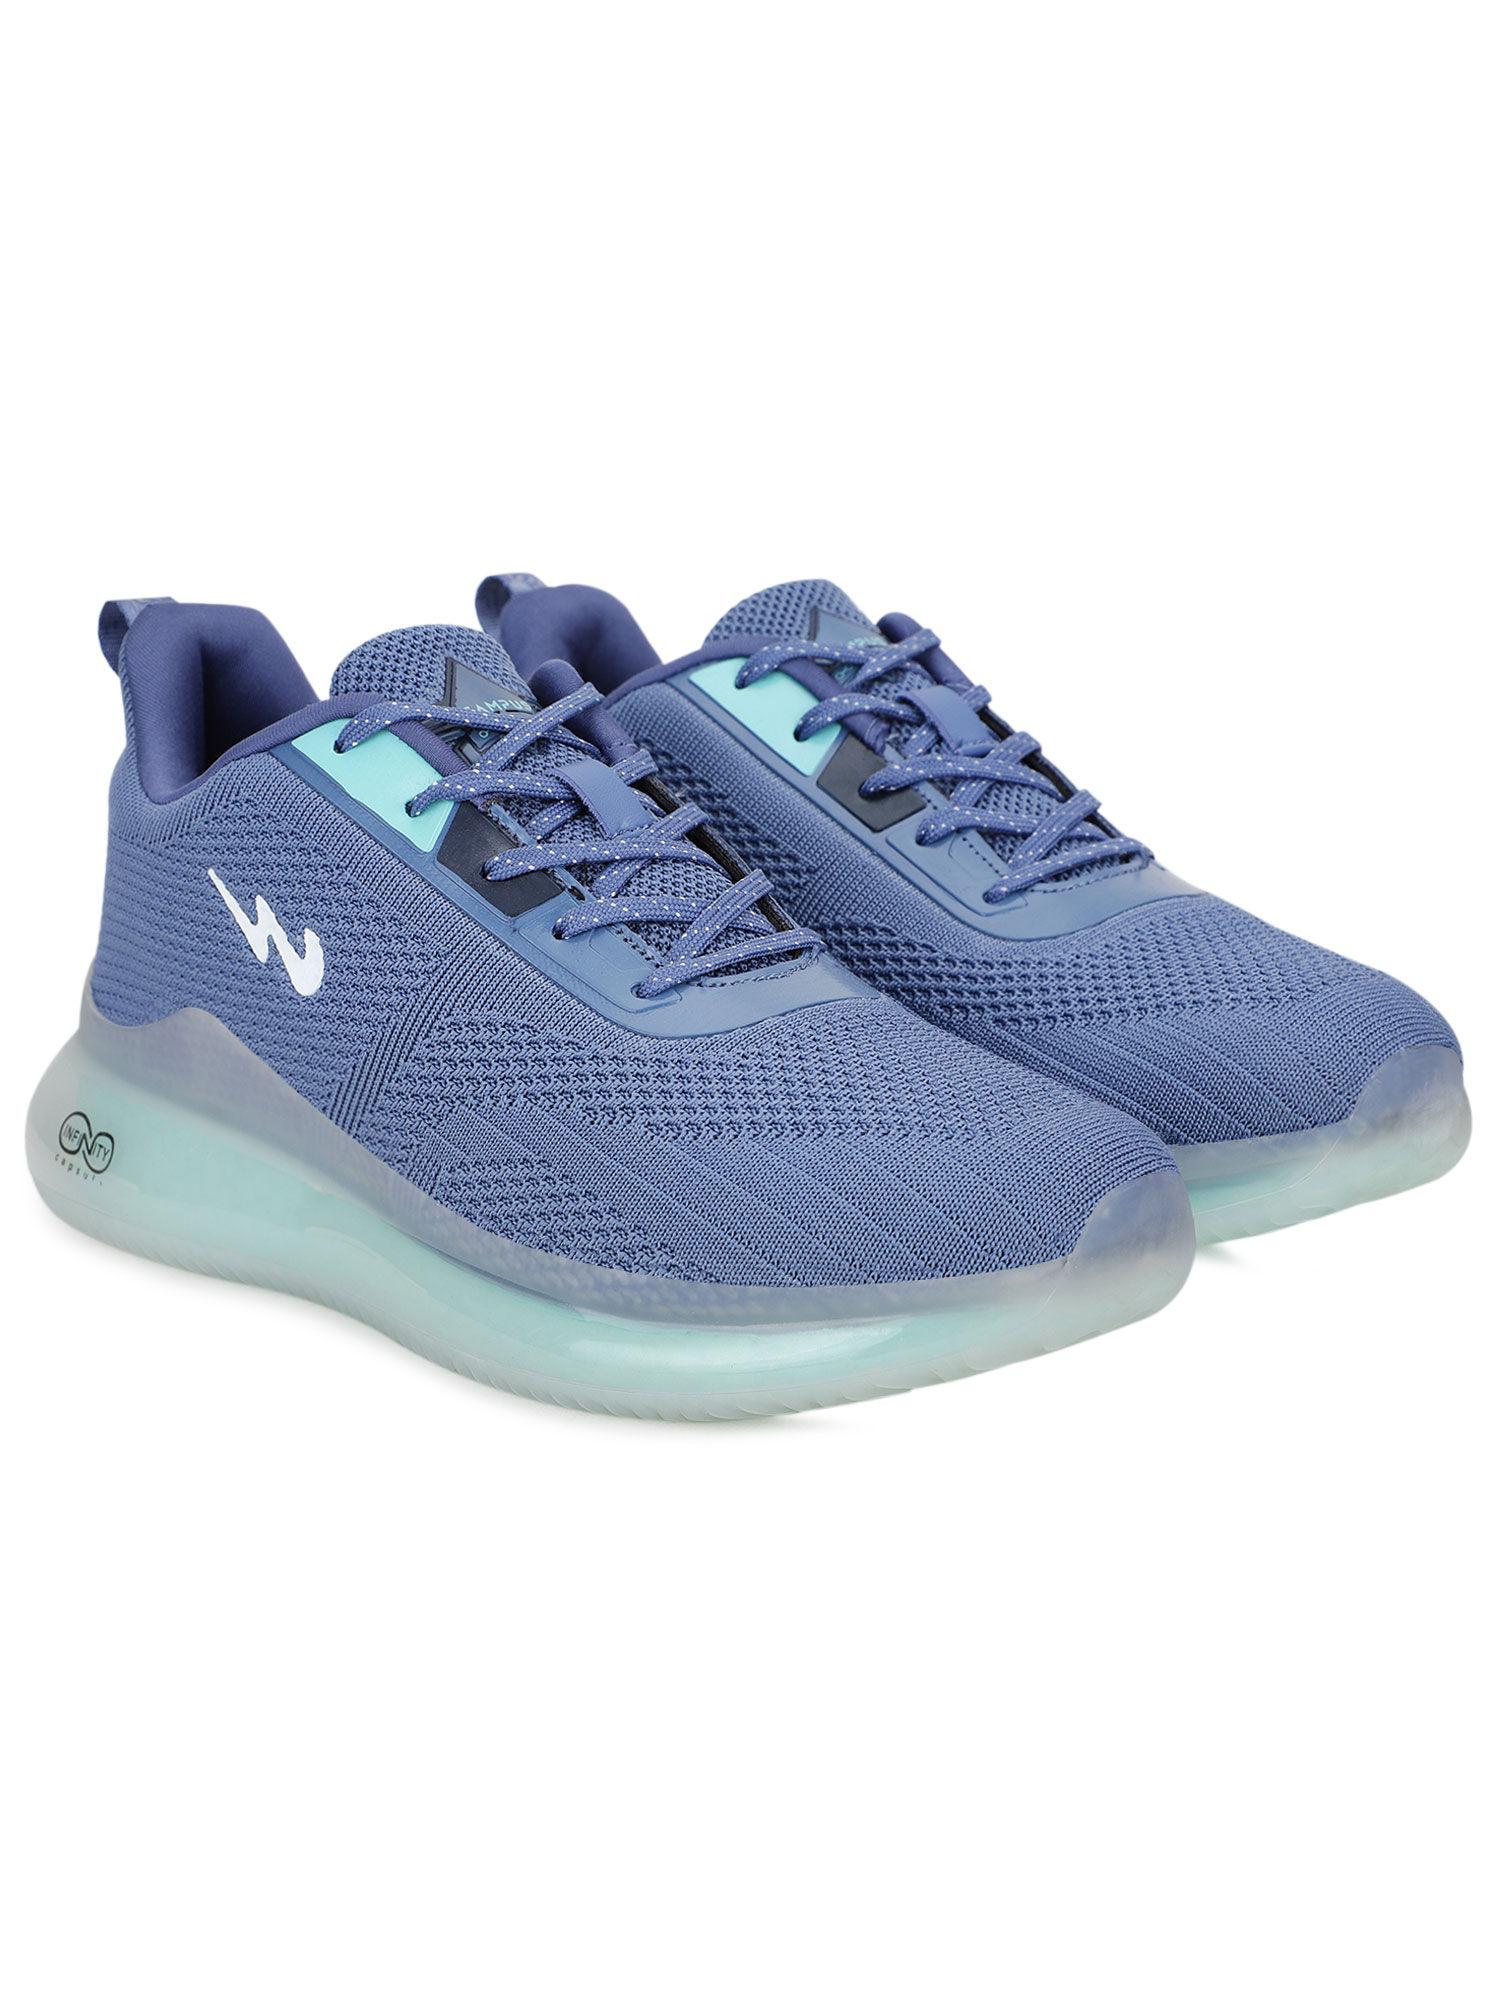 artemis blue running shoes for men